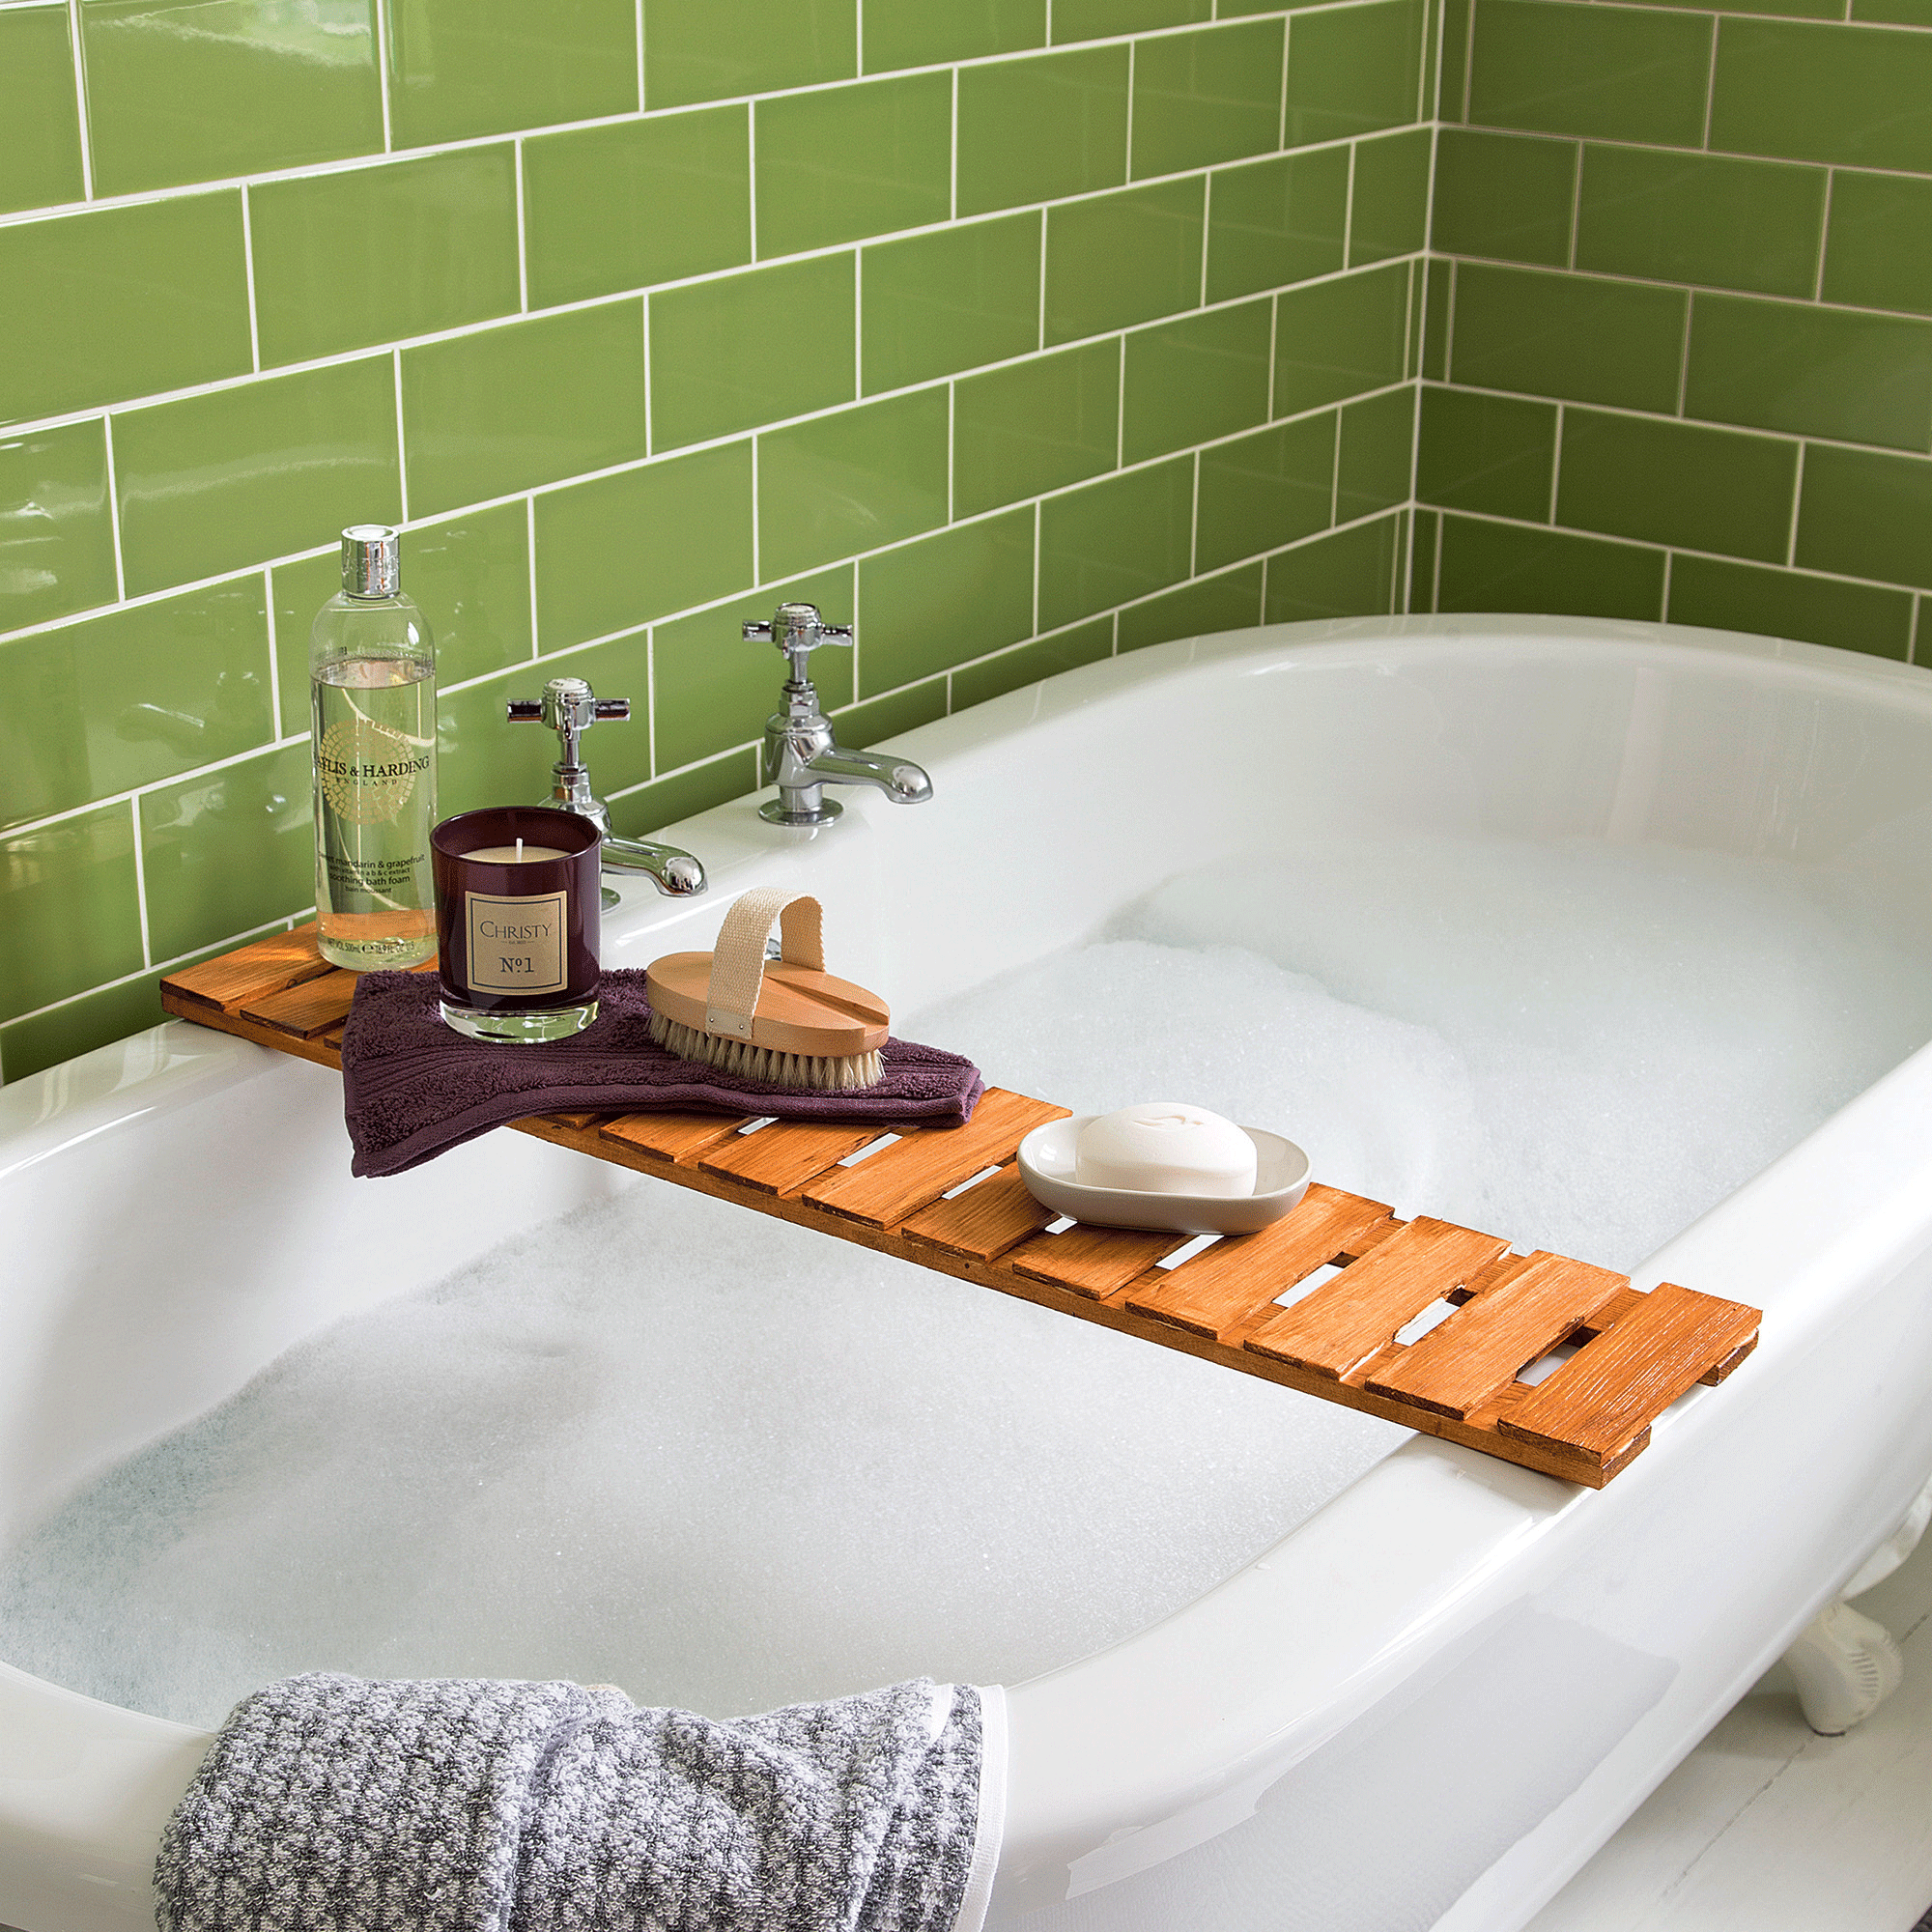 Green tiles around bath tub